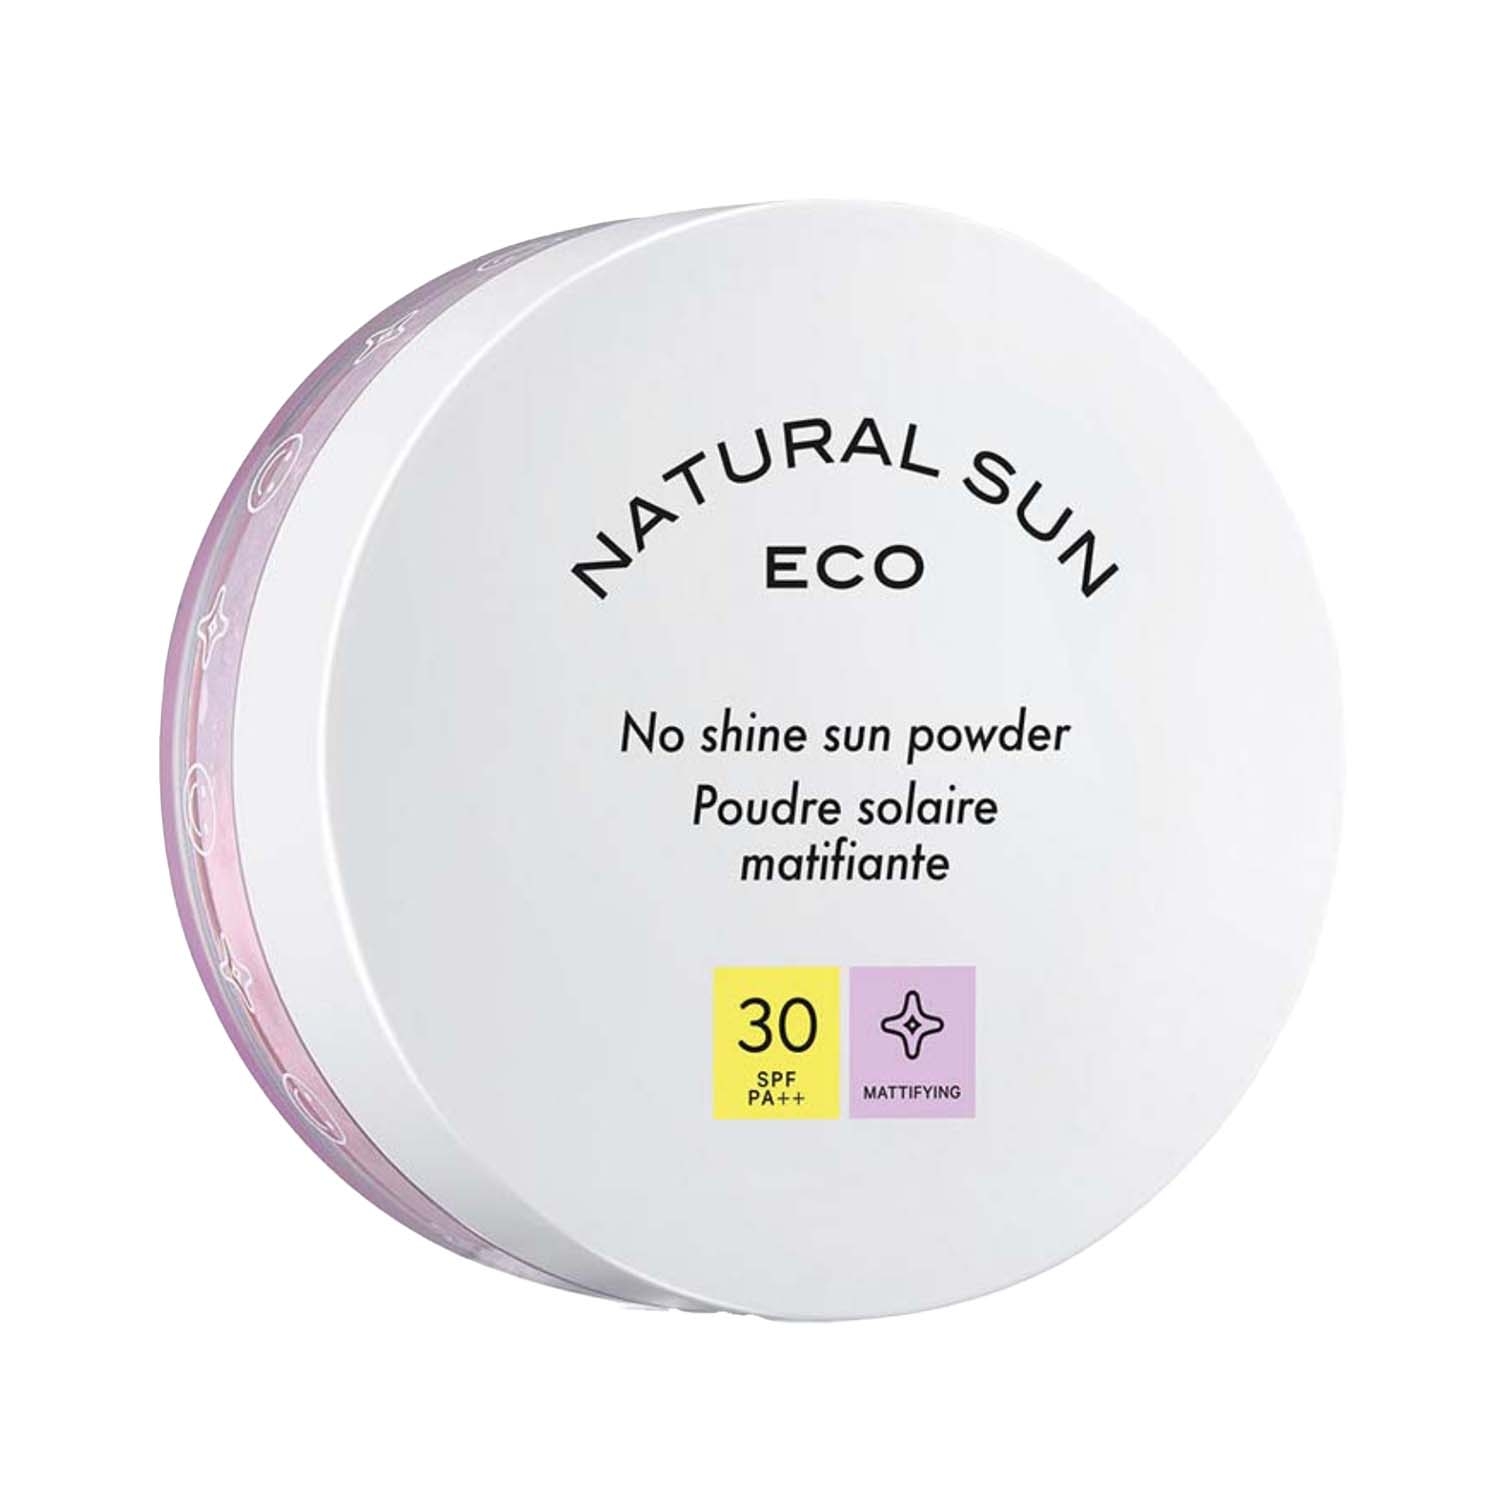 The Face Shop | The Face Shop Naturalsun Eco No Shine SPF 30+ Sun Powder (13g)